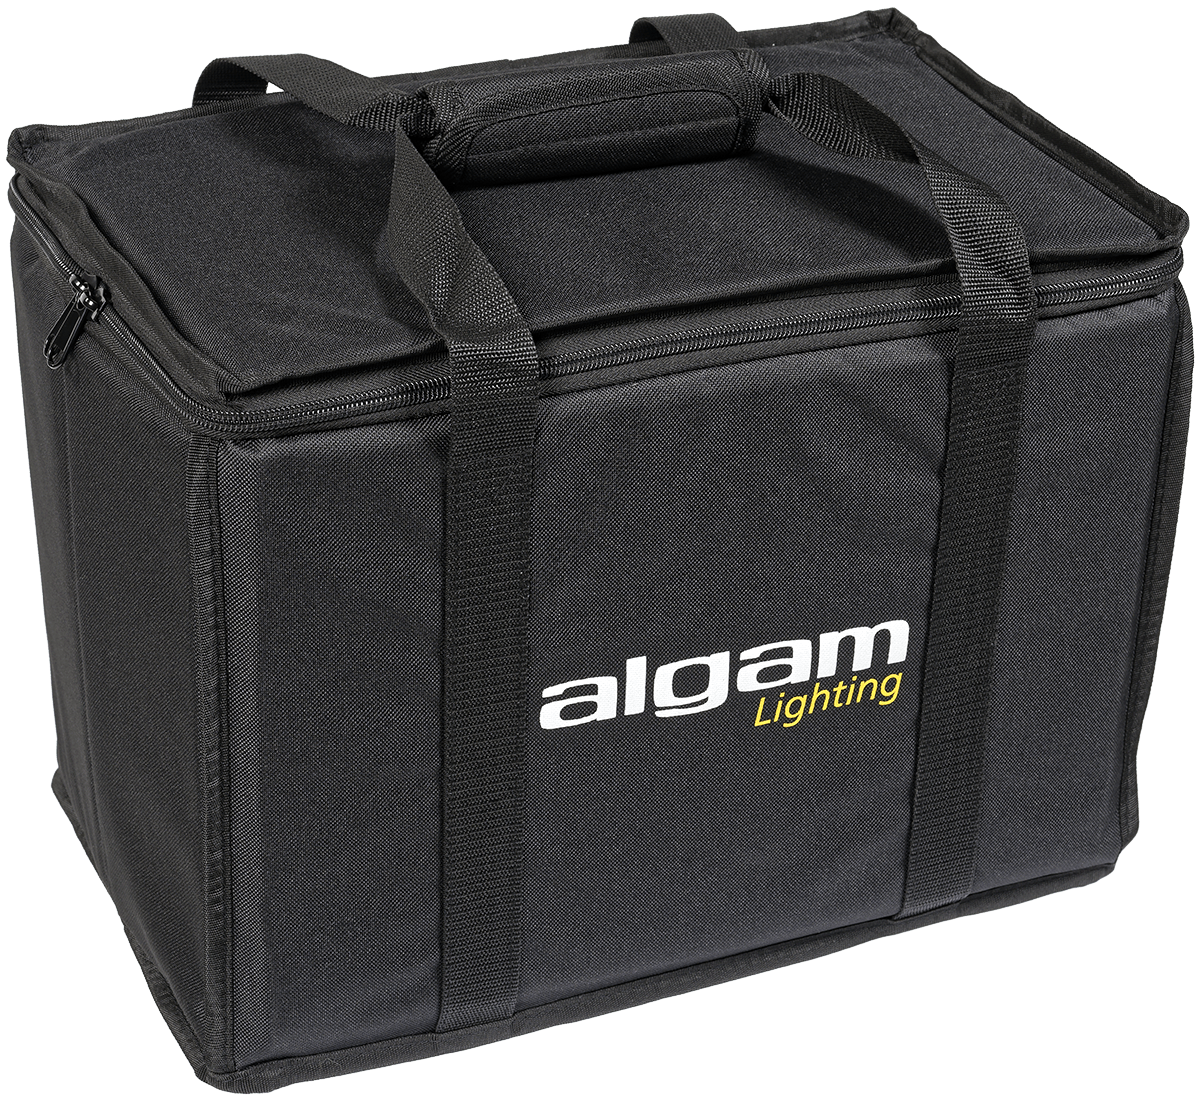 Algam Lighting - Bag - 40x26x30